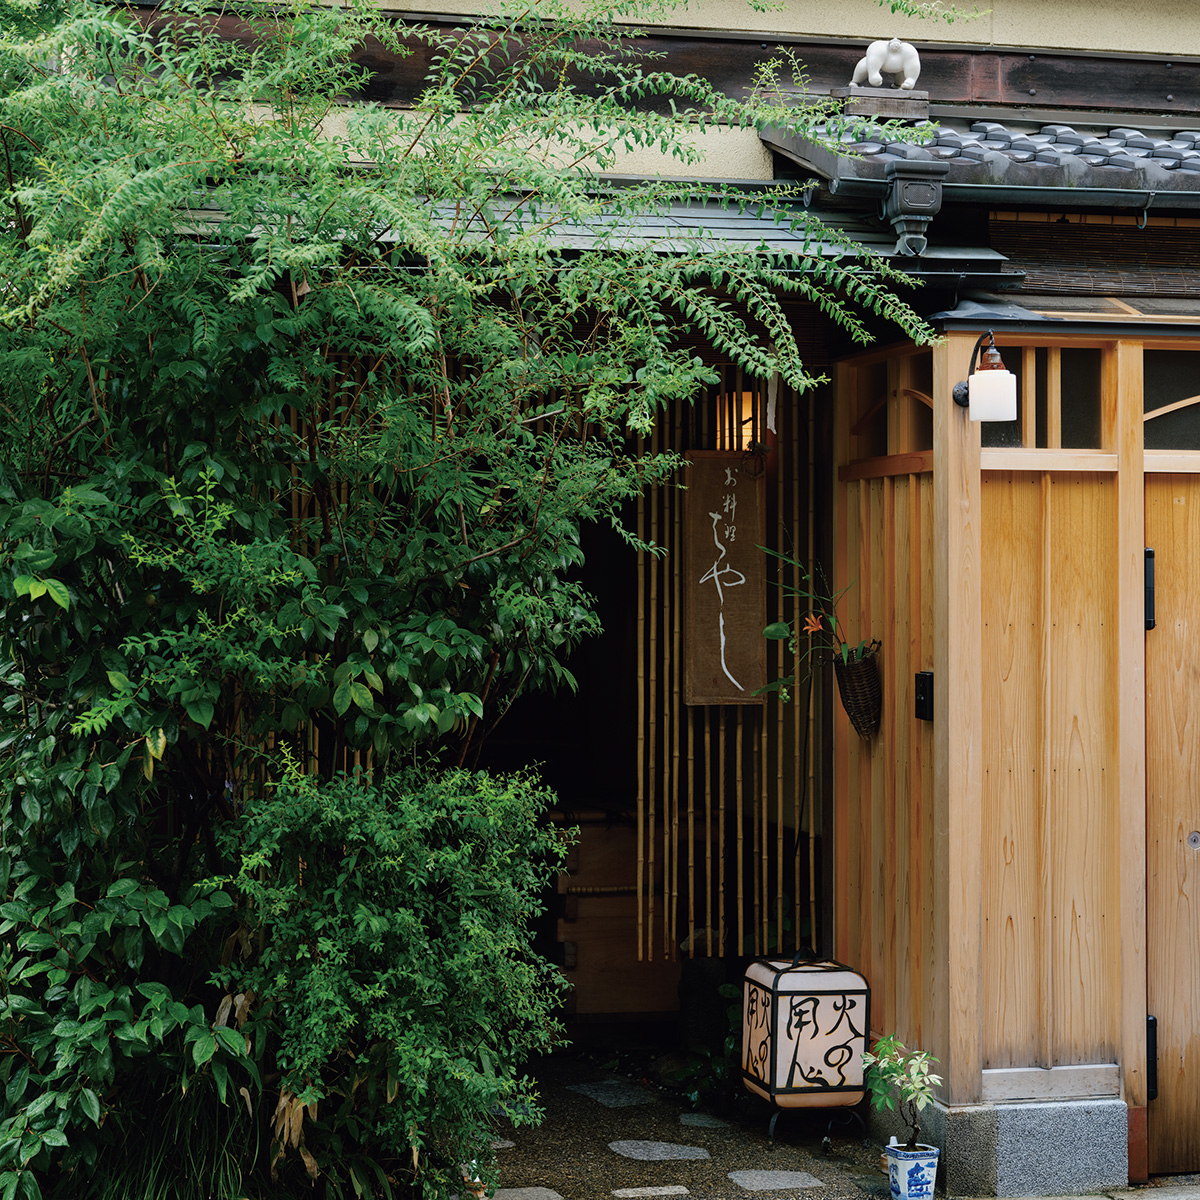 緑に覆われた風情ある仕舞た屋。店は隠れるようにひっそりある。小さな行灯と目立たぬ看板が目印。水を打った石畳を渡って玄関へ。いよいよ日本料理の極みを味わう。